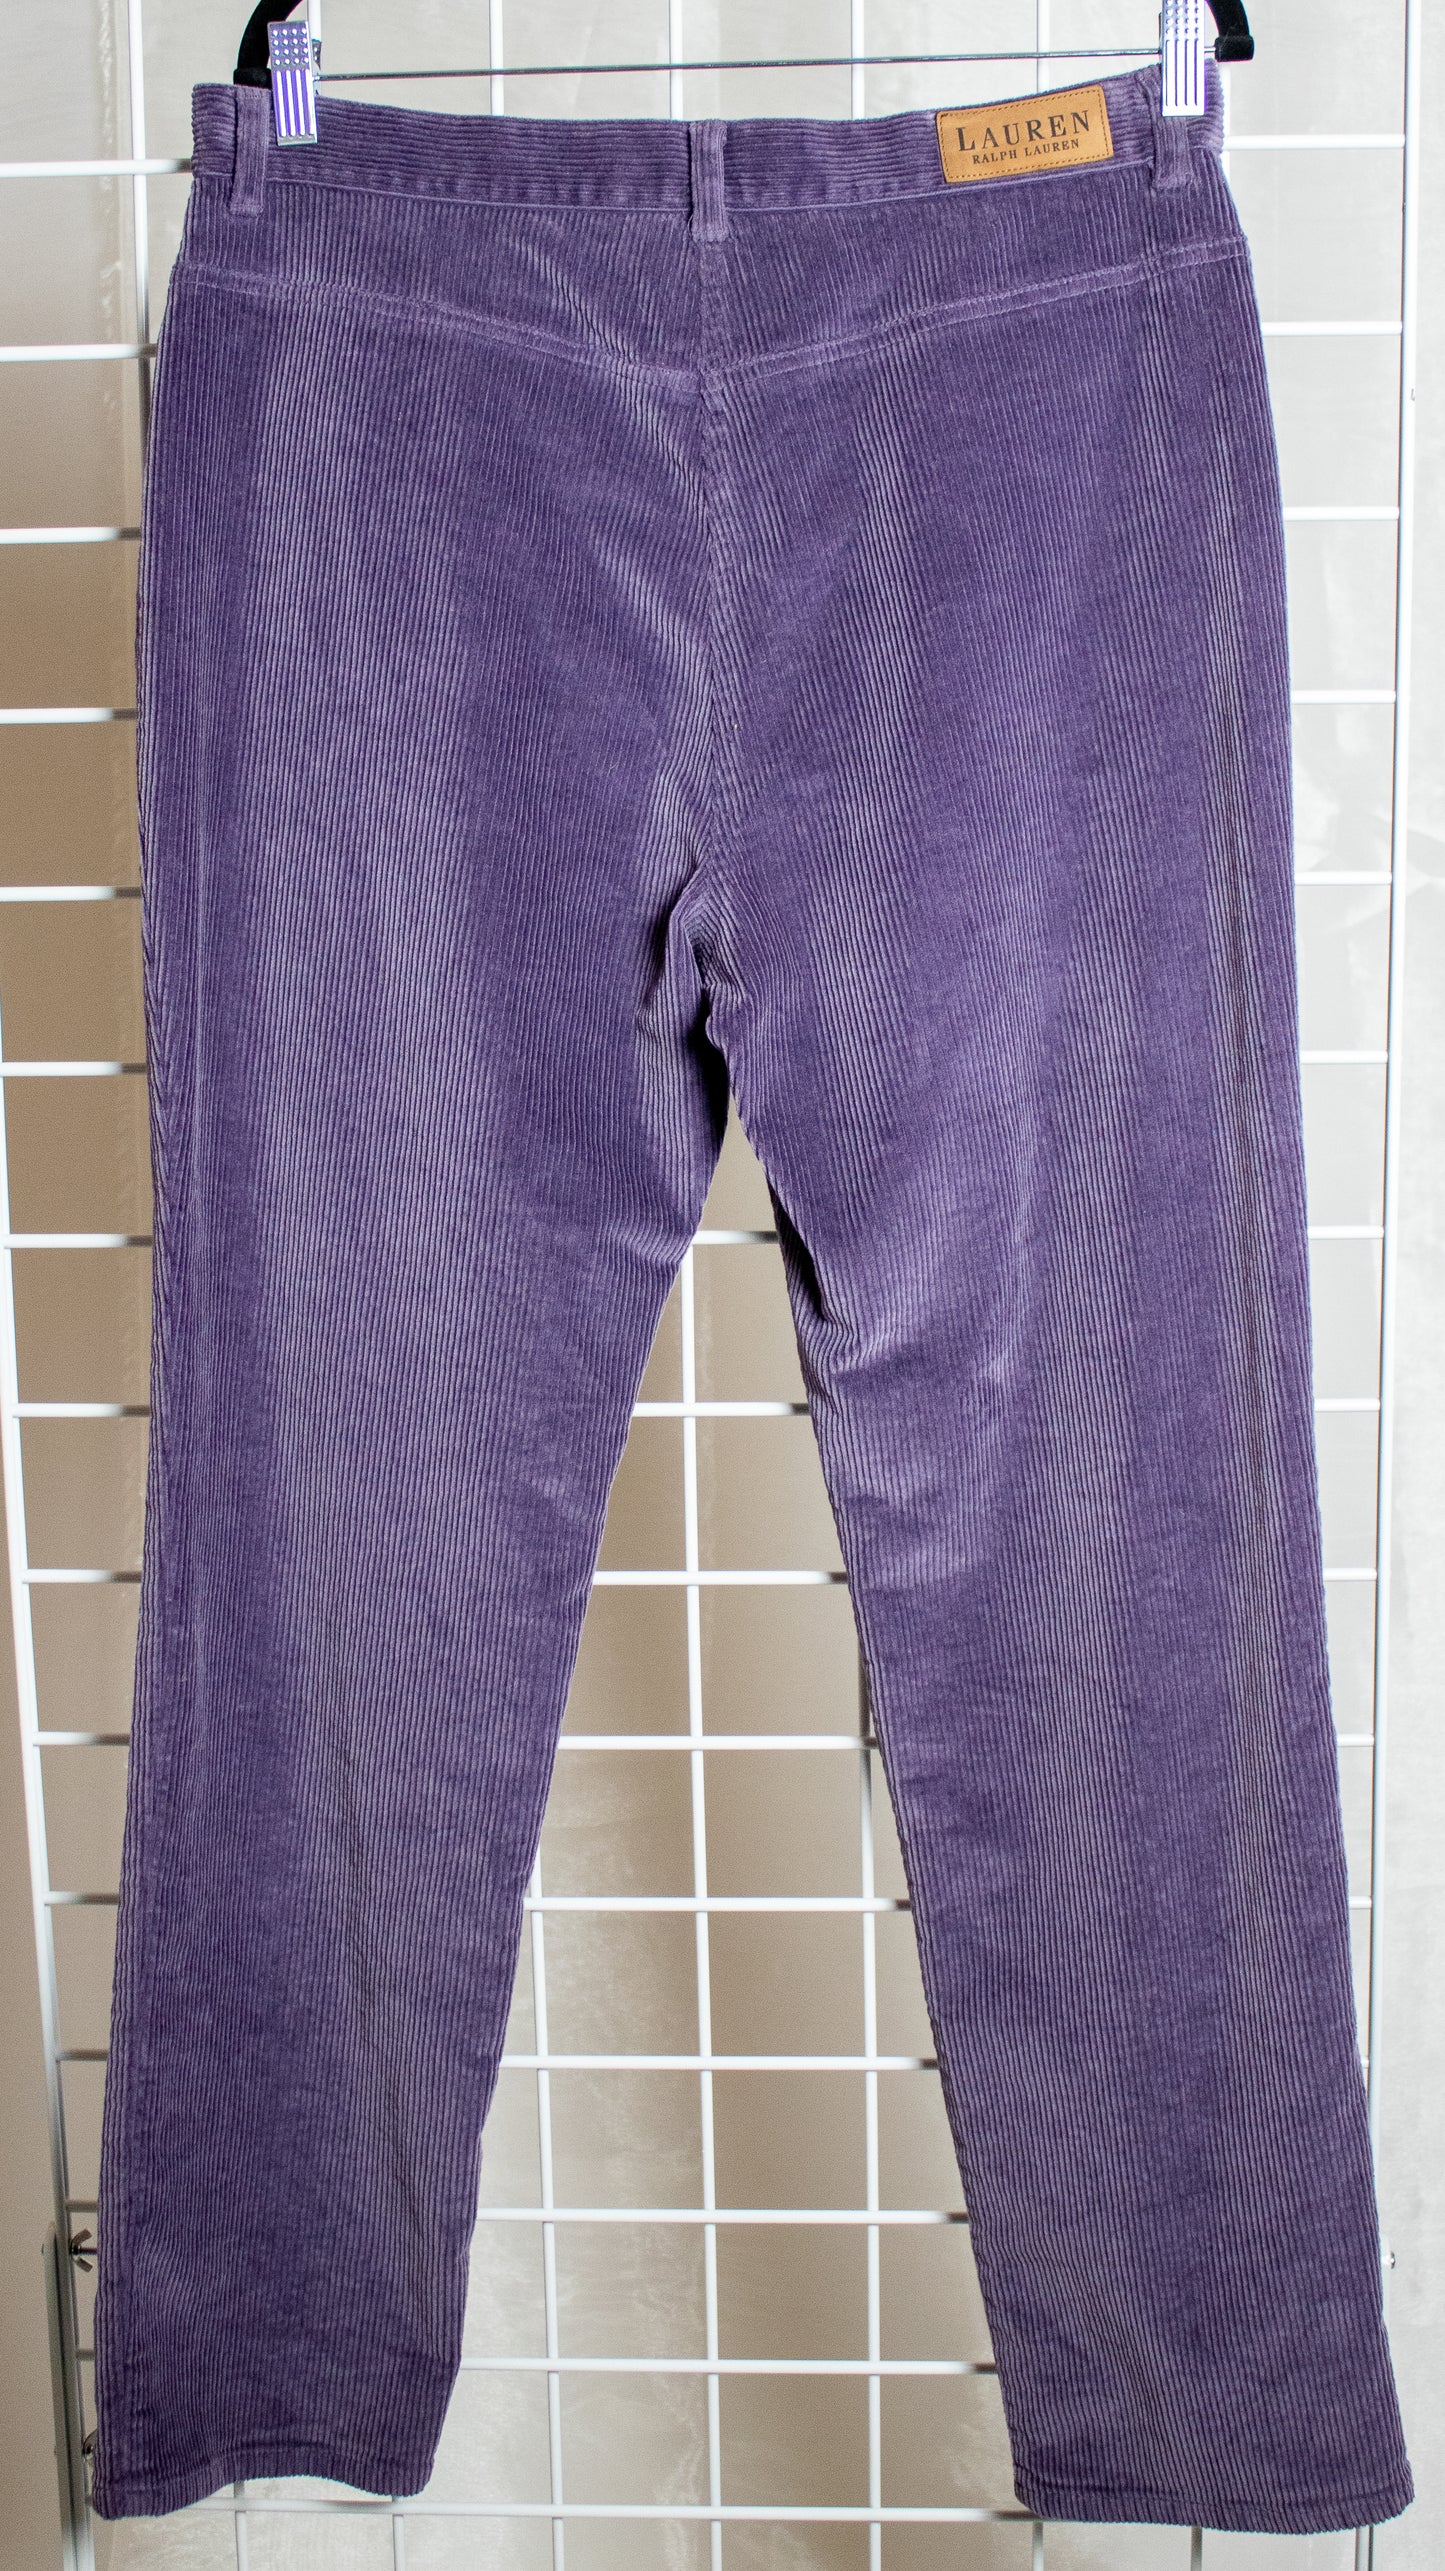 Purple Ralph Lauren Corduroy Pants - 34x30